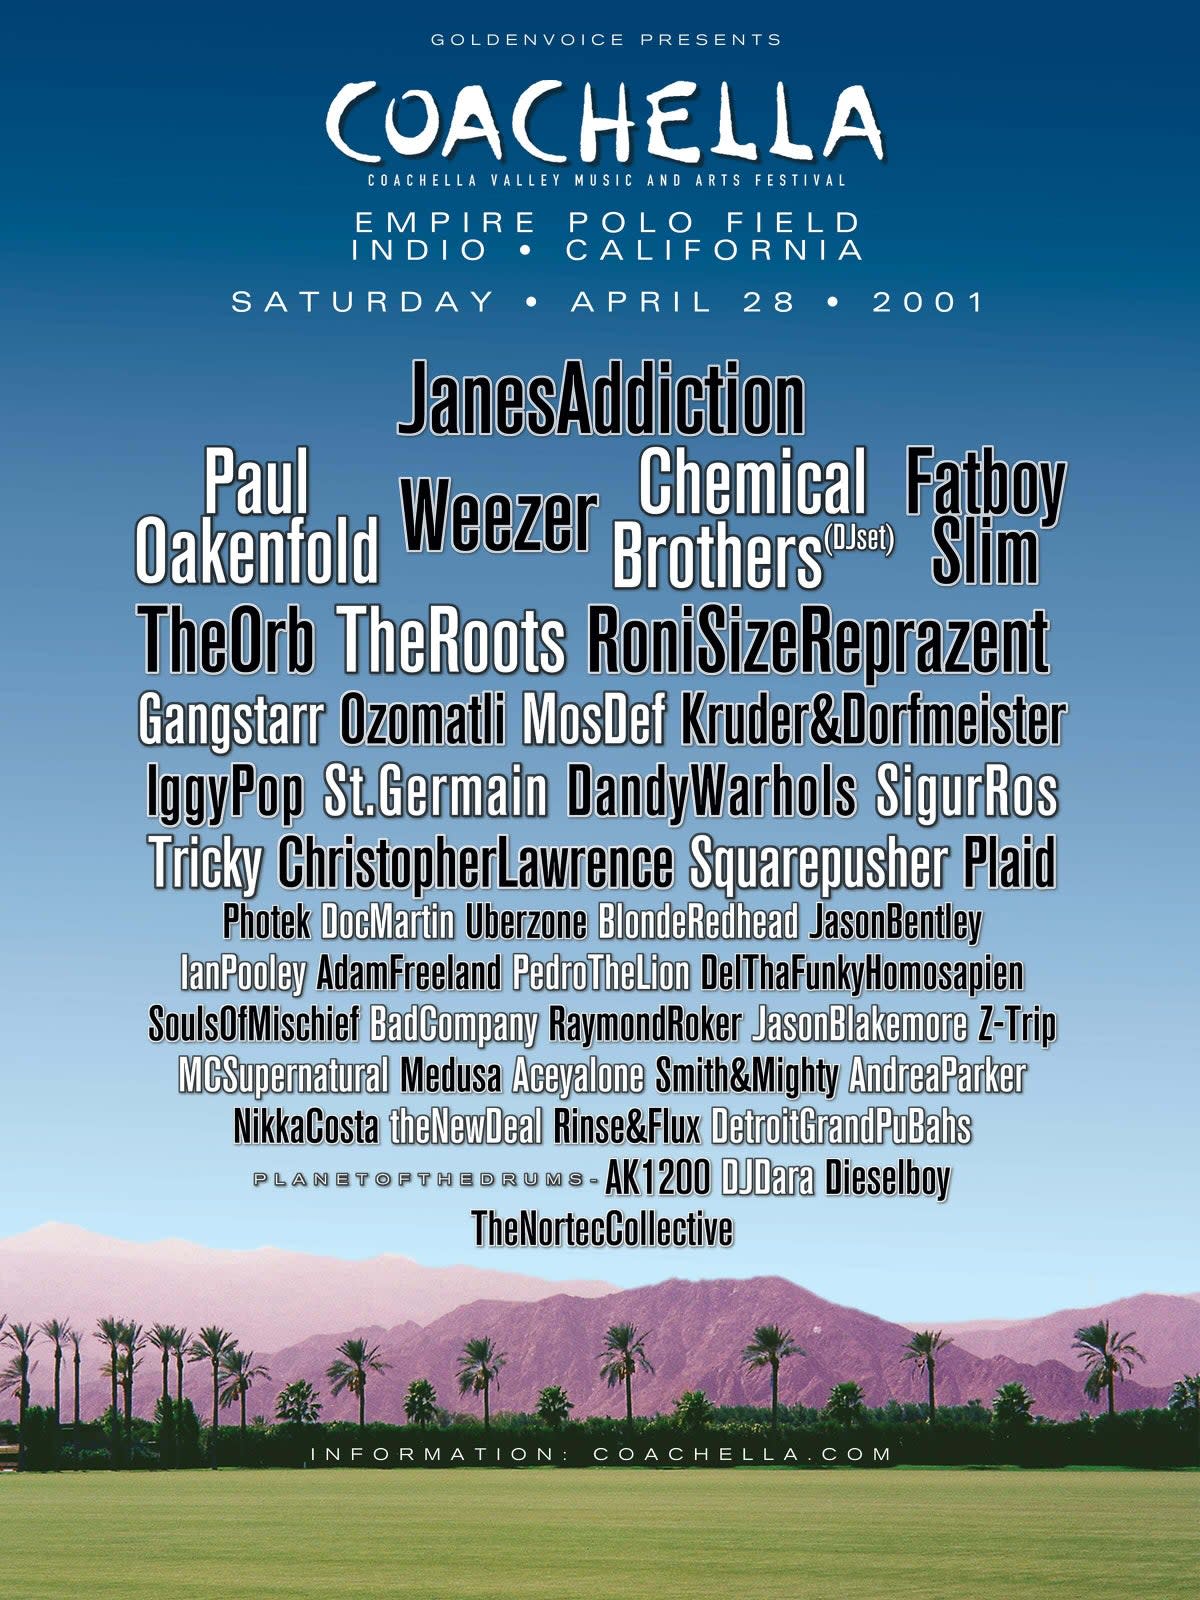 Coachella 2001 poster (Coachella.com)